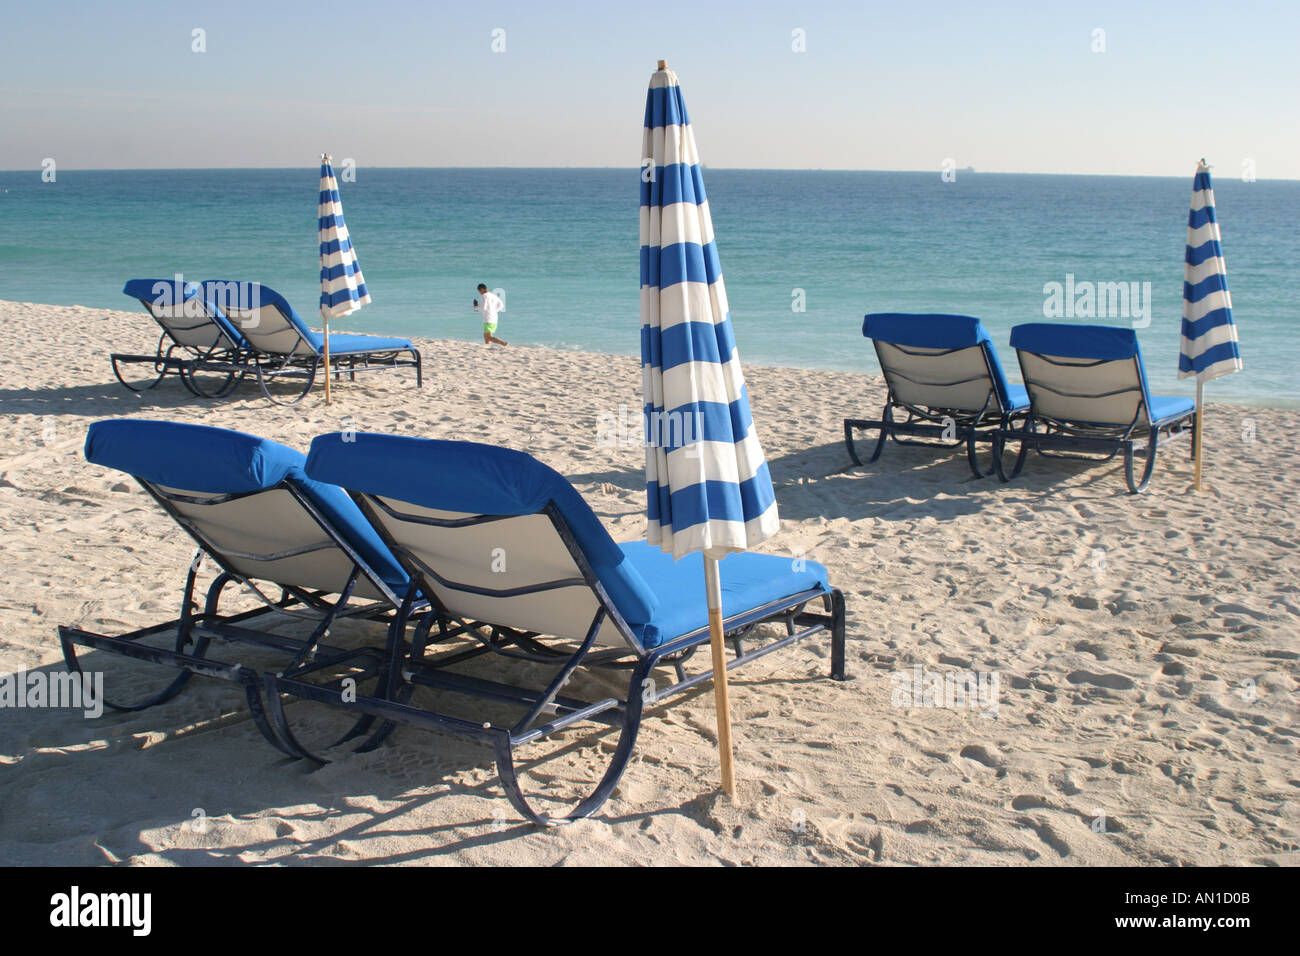 Miami Beach Florida,Atlantic Shore,rivage,côte,littoral,littoral,littoral,littoral,littoral,littoral,littoral,littoral,plage,location de chaises et parasols, les visiteurs Voyage tourisme touristique landm Banque D'Images